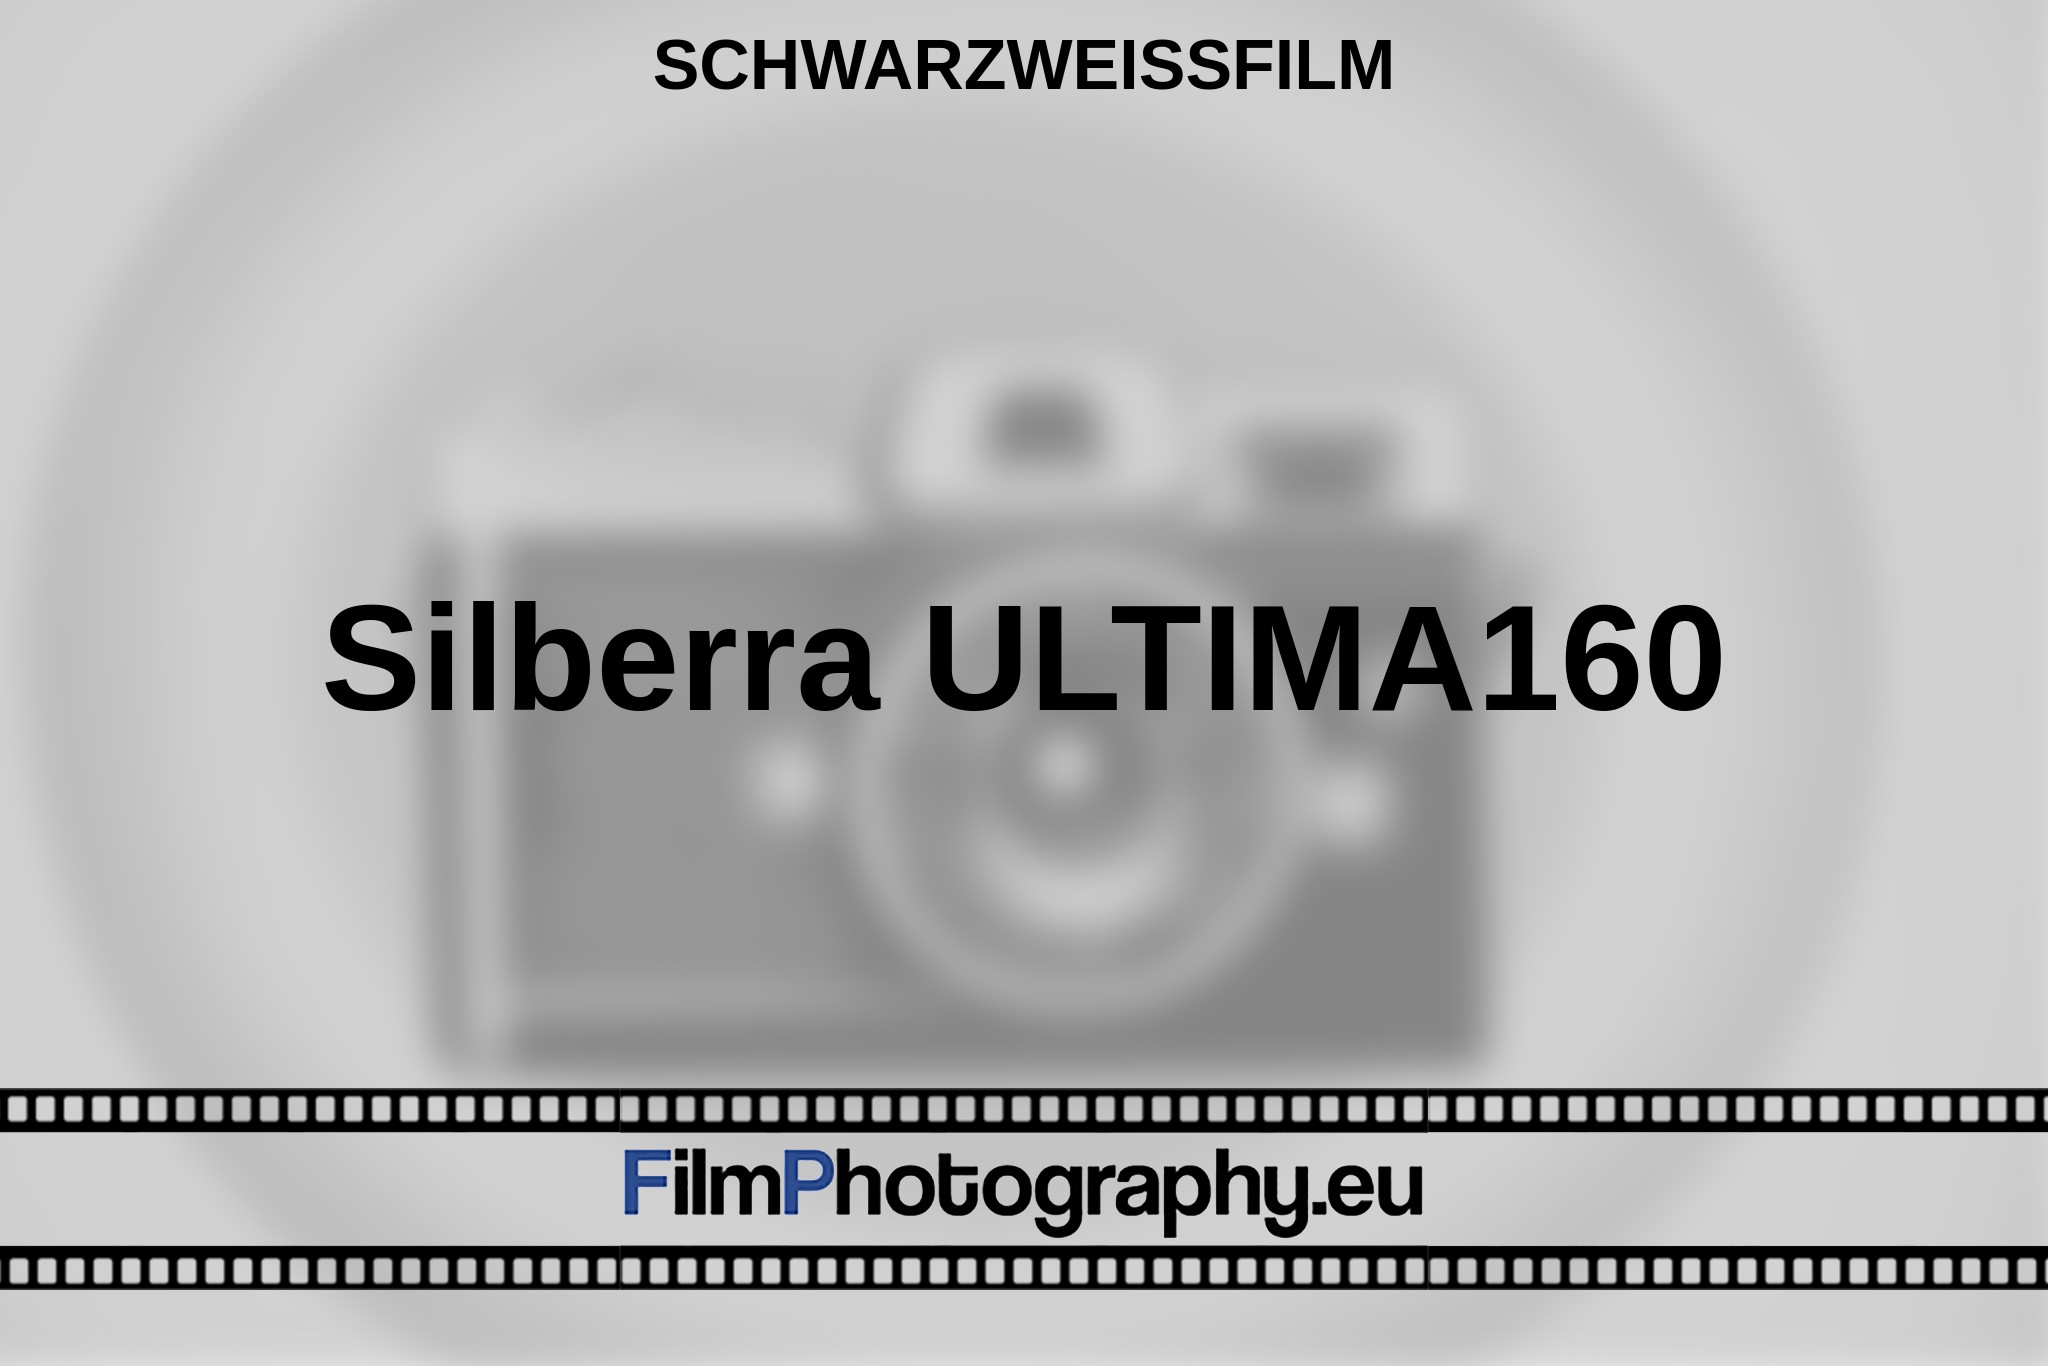 silberra-ultima160-schwarzweißfilm-bnv.jpg